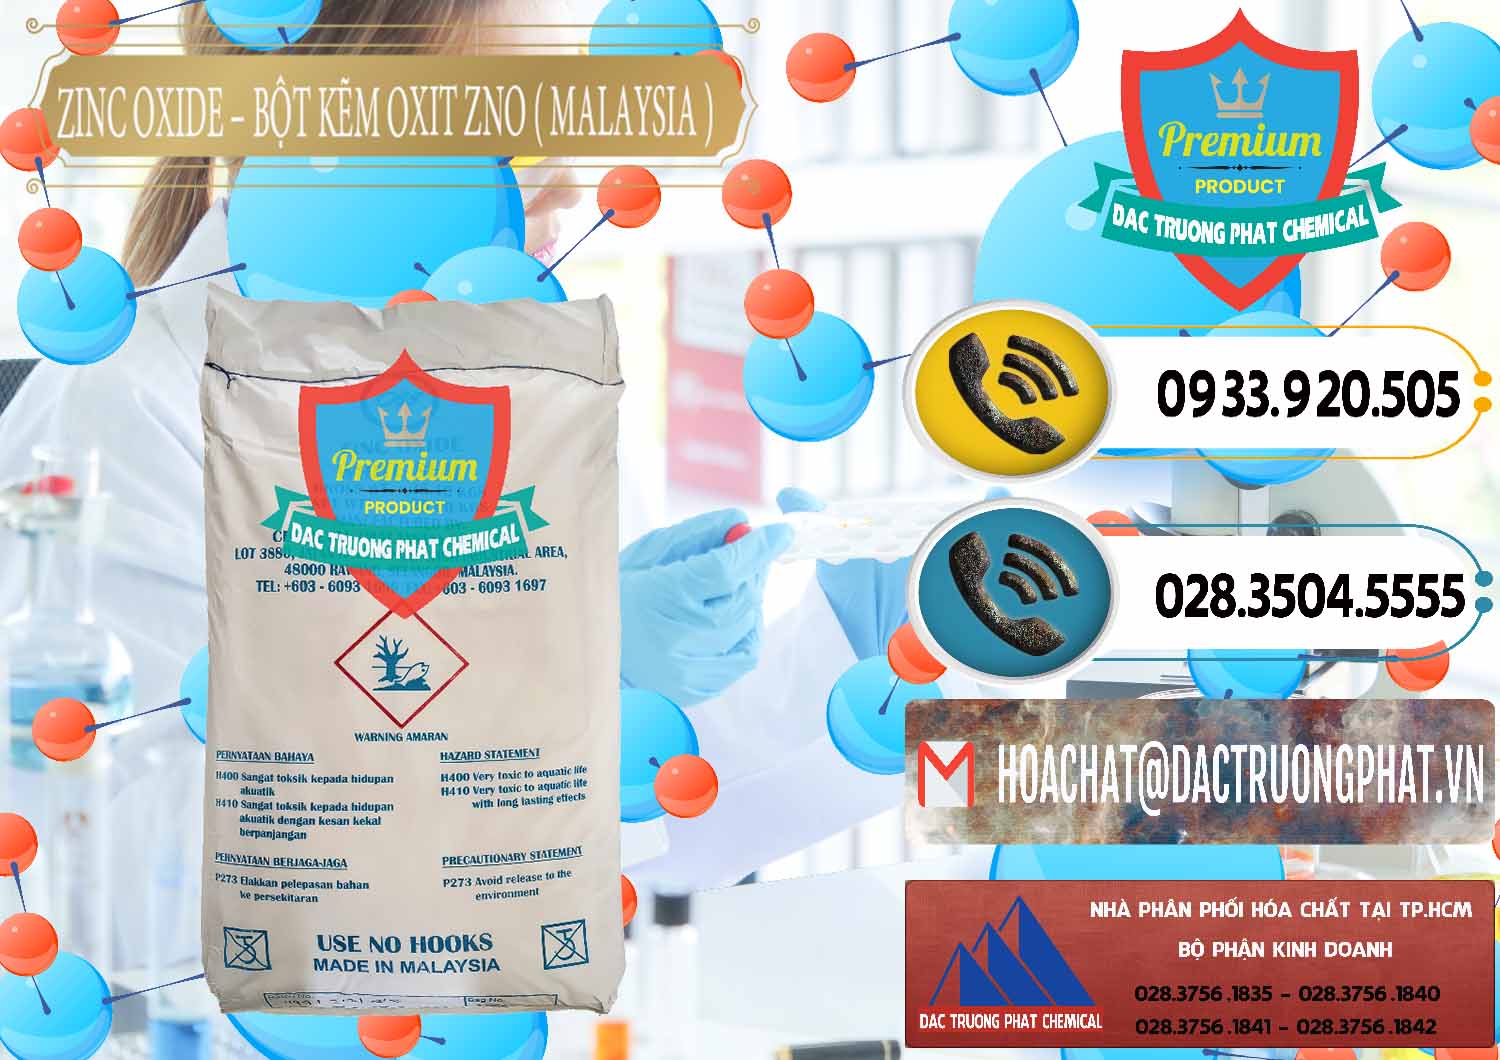 Công ty chuyên bán & phân phối Zinc Oxide - Bột Kẽm Oxit ZNO Malaysia - 0179 - Nơi phân phối và bán hóa chất tại TP.HCM - hoachatdetnhuom.vn